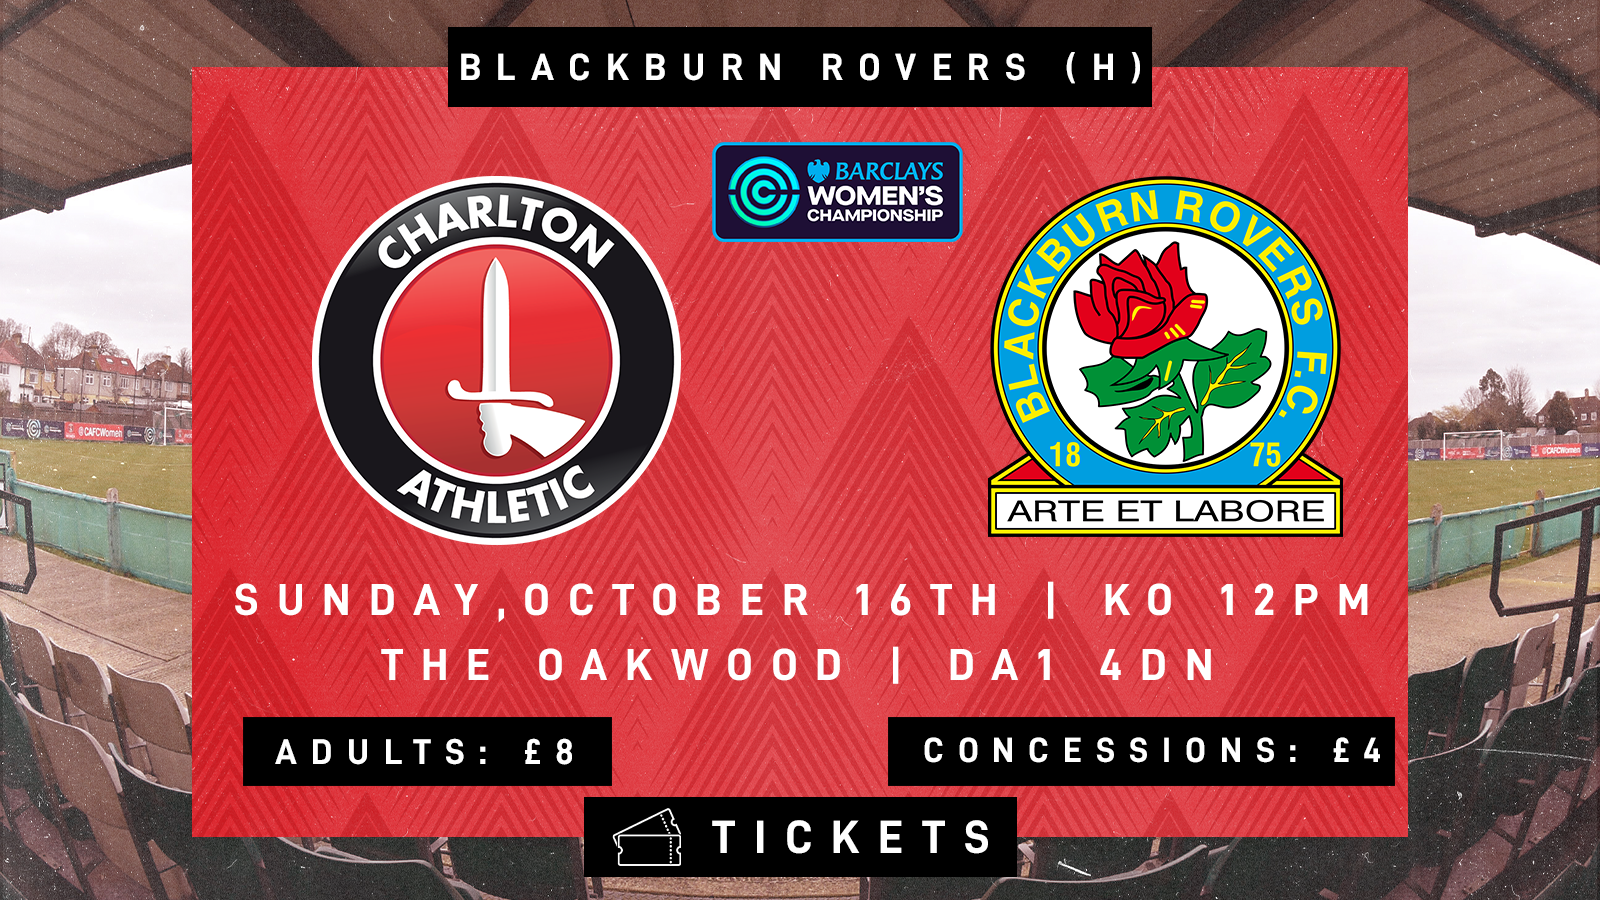 Blackburn Rovers Tickets 